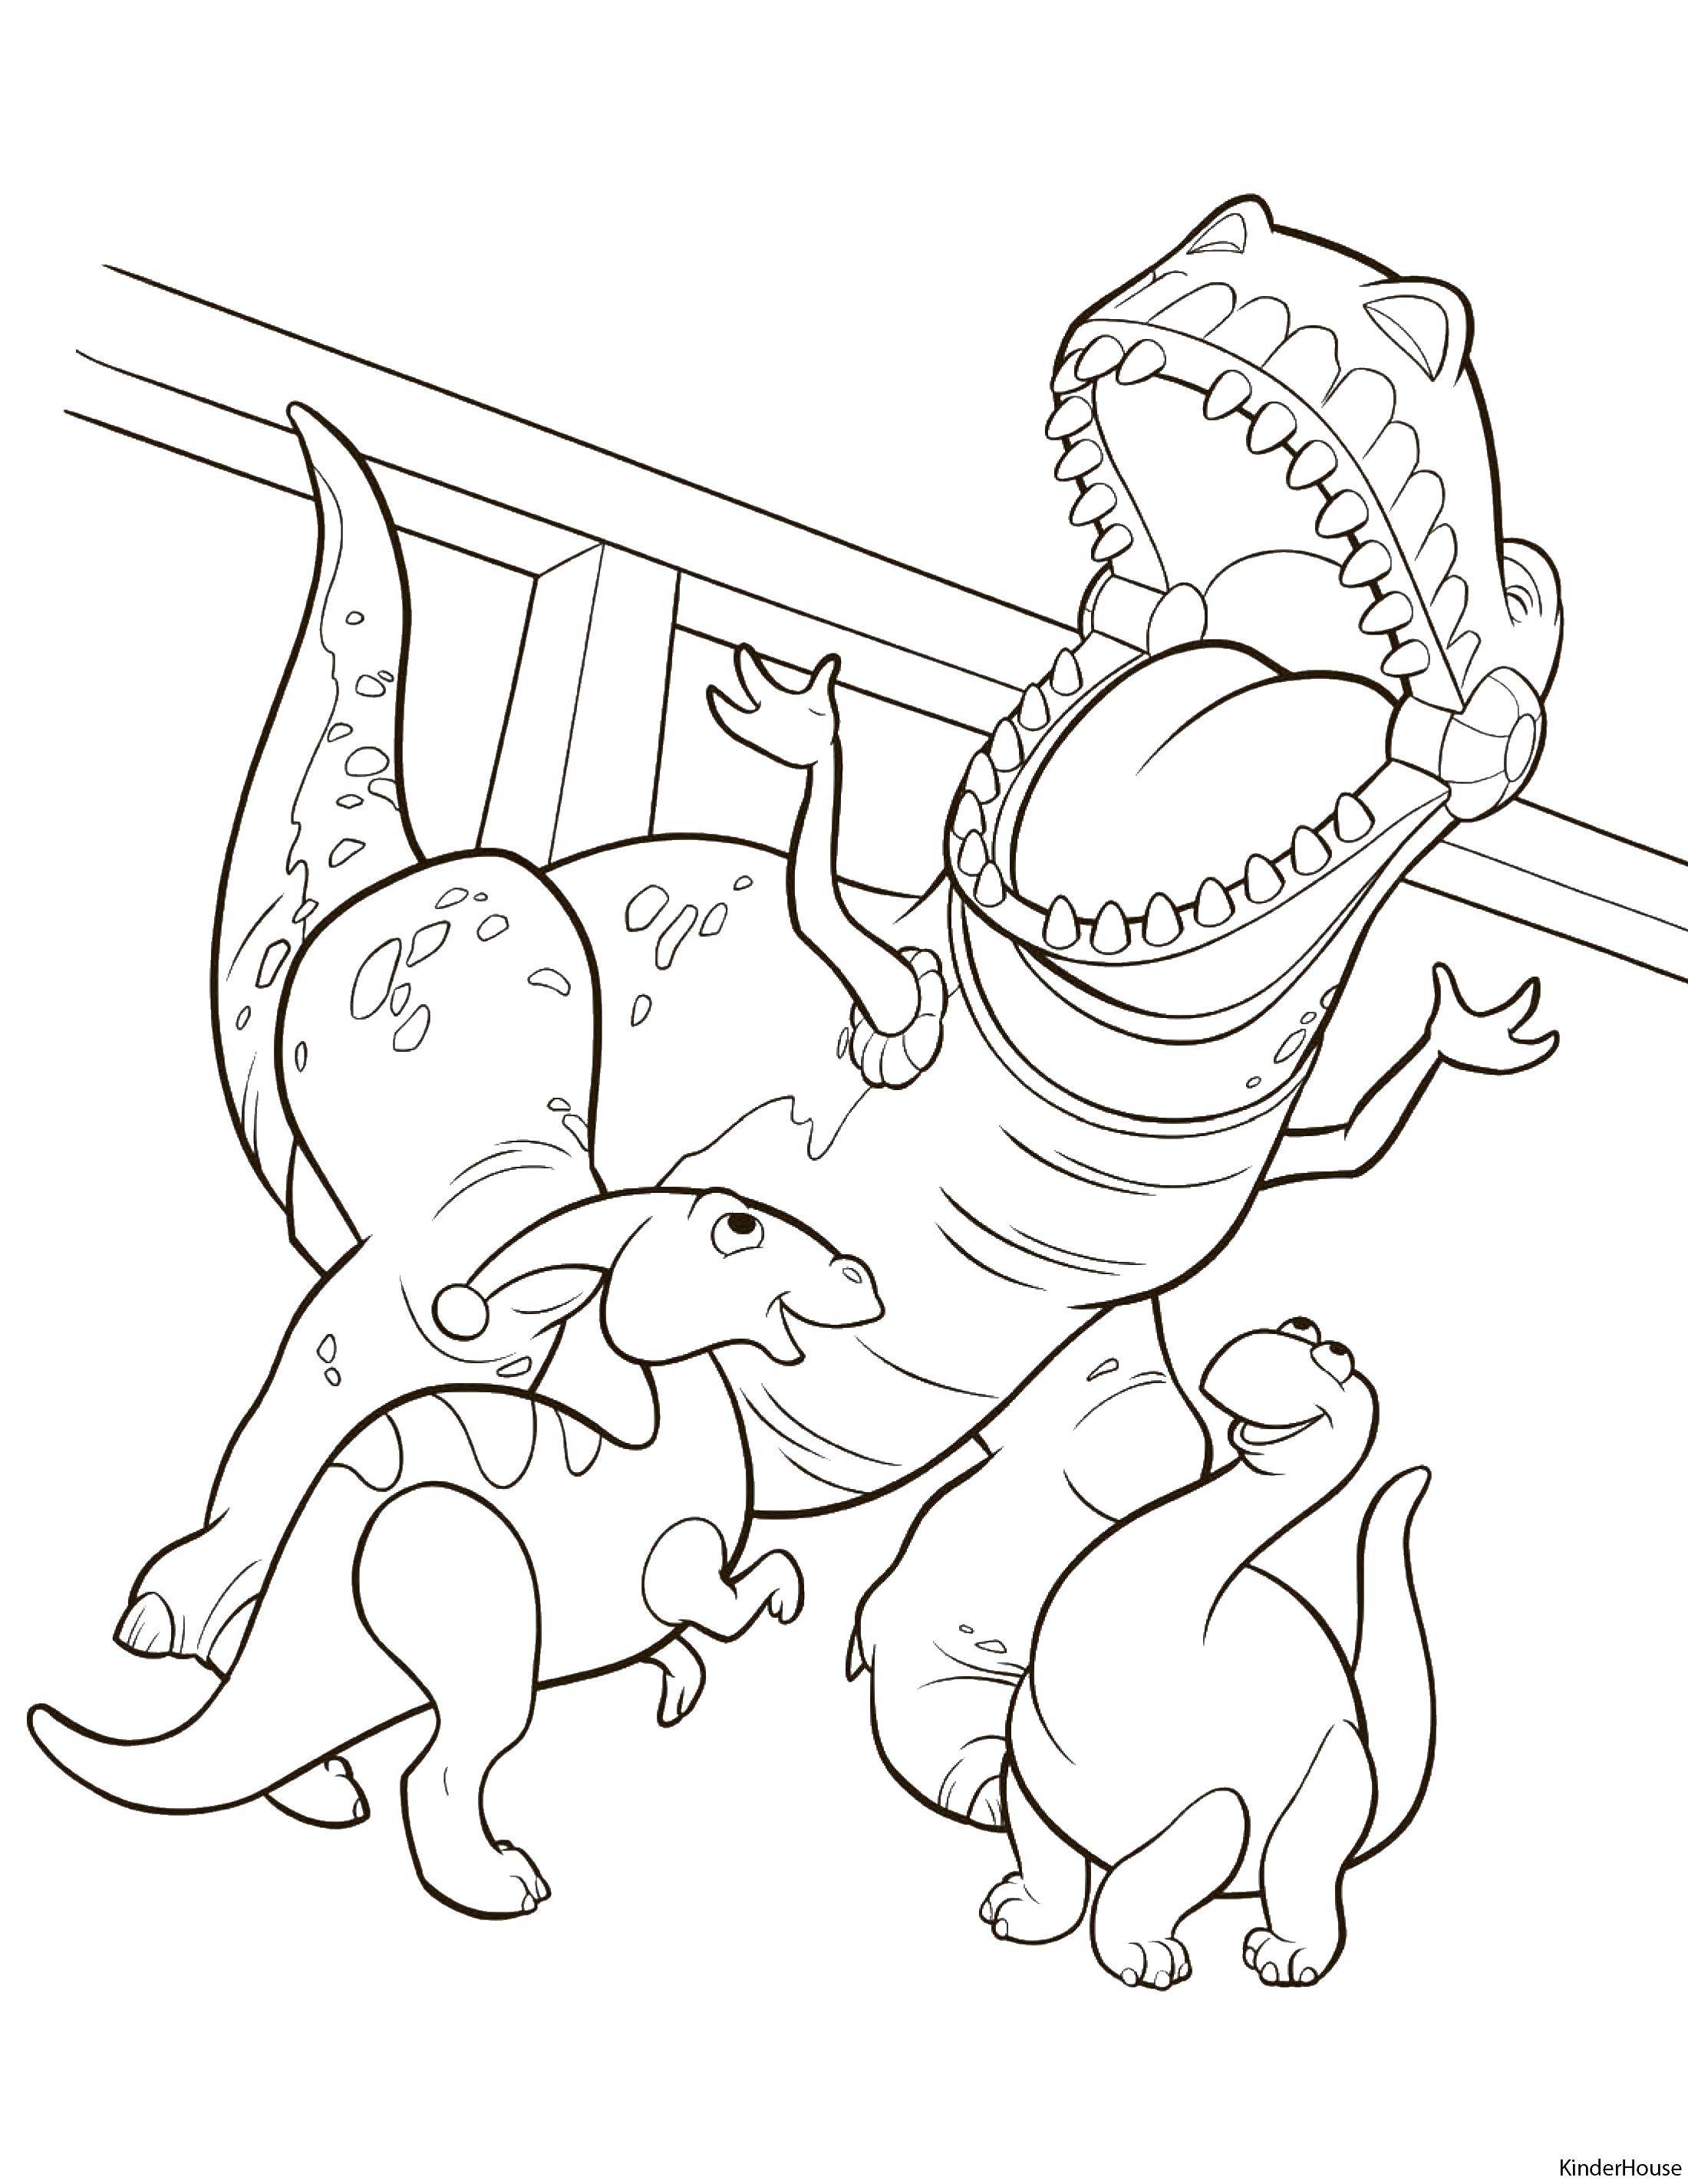 Название: Раскраска Динозавр рекс. Категория: история игрушек. Теги: динозавр Рекс, история игрушек.